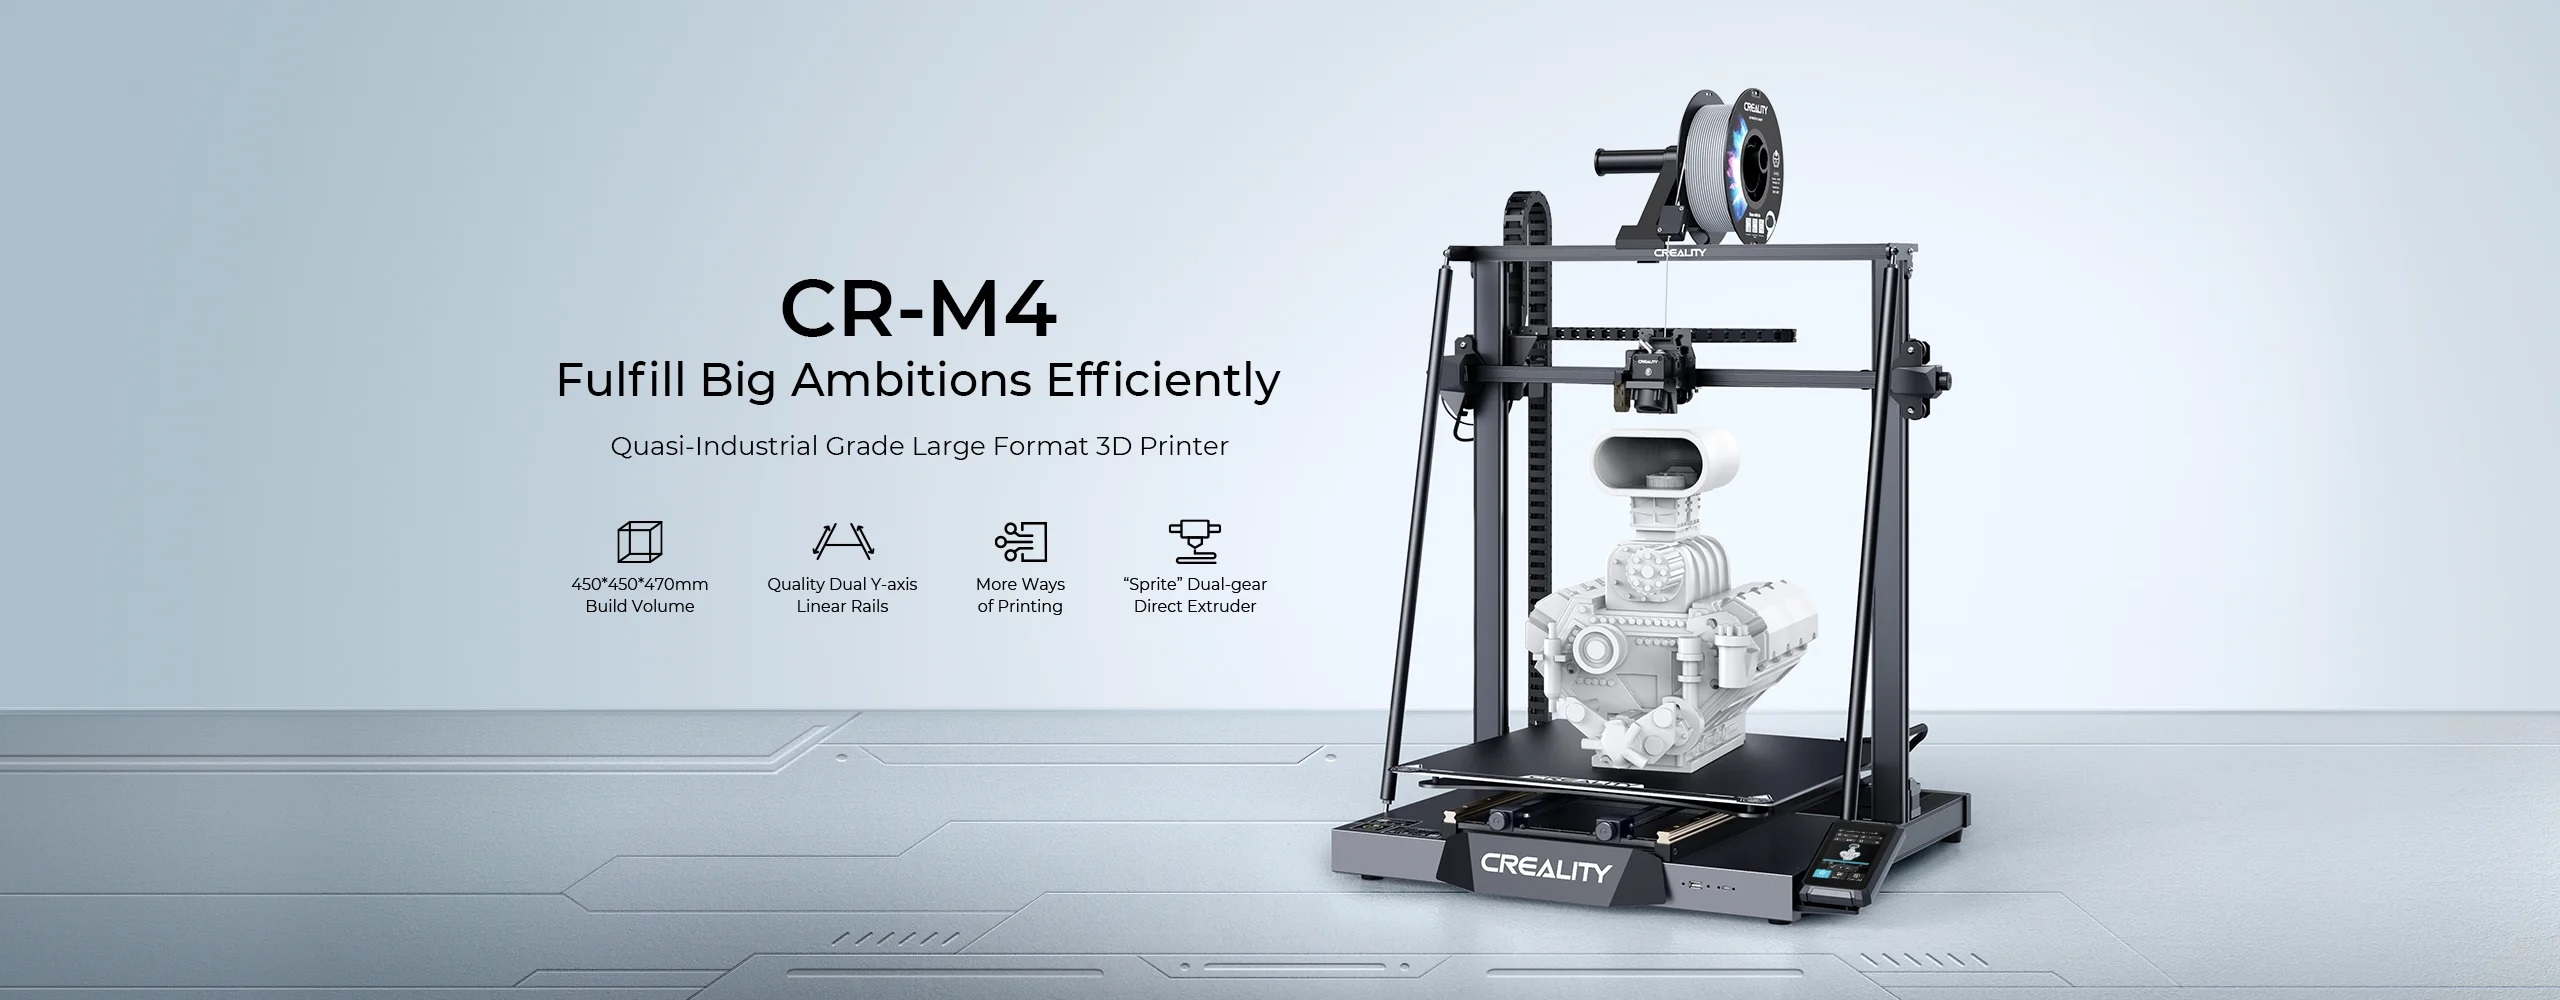 cr-m4 3d printer